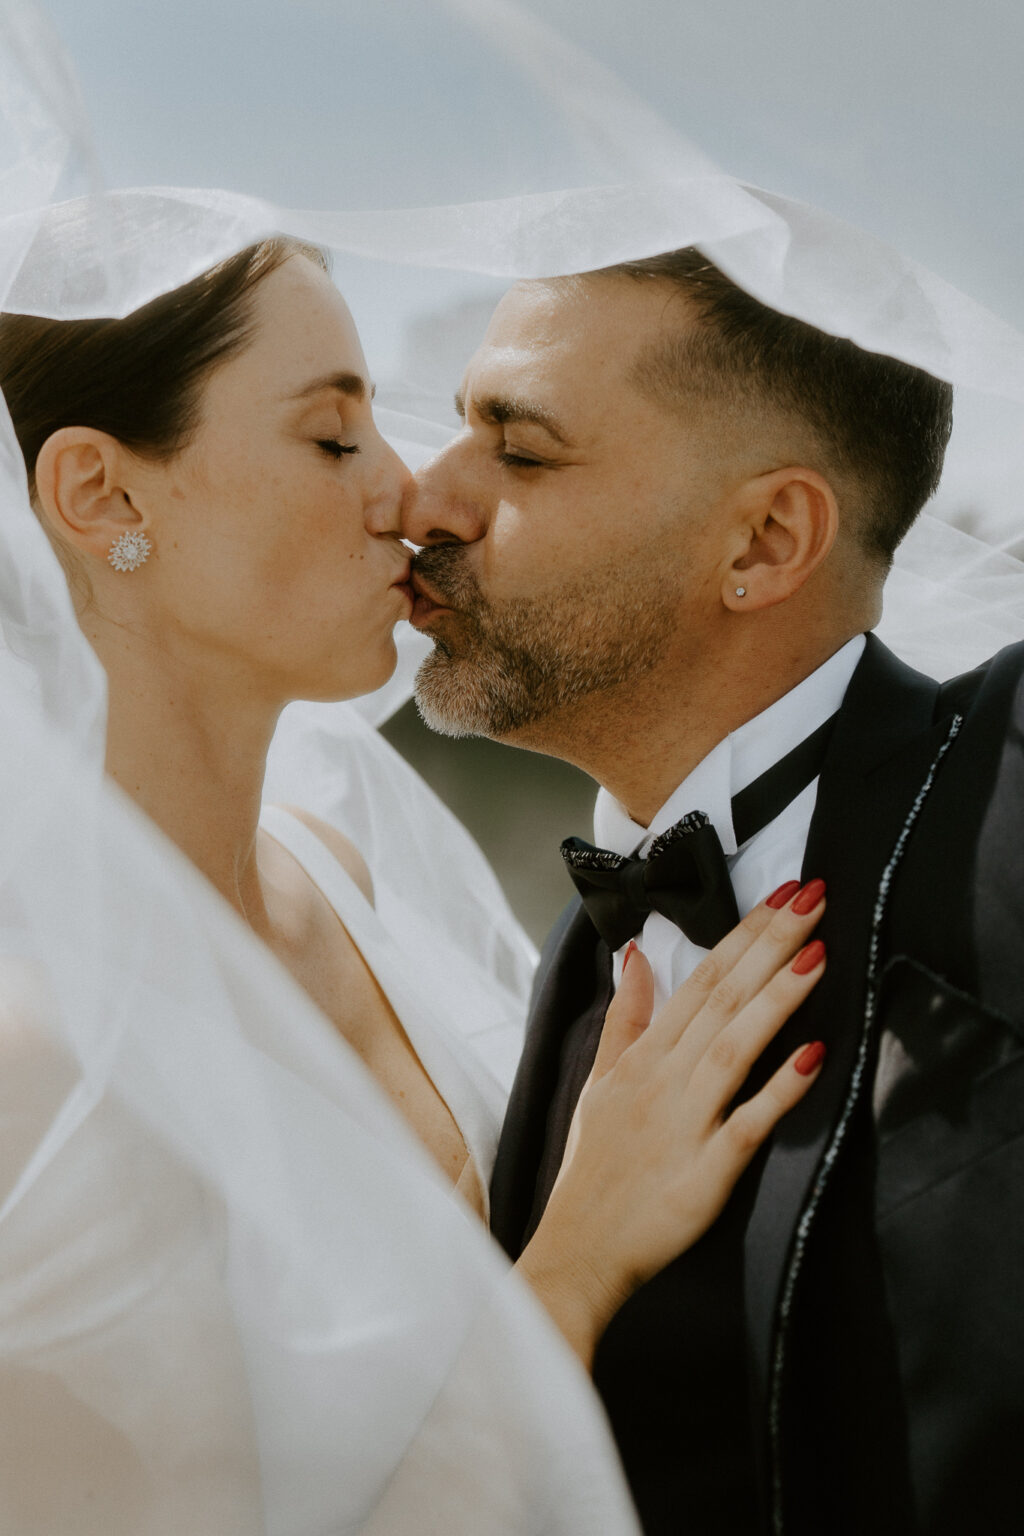 Entdecken Sie unsere einzigartigen Hochzeitsbilder, die Liebe und Emotionen perfekt einfangen. Professionell fotografierte Hochzeitsbilder für unvergessliche Erinnerungen an Ihren besonderen Tag